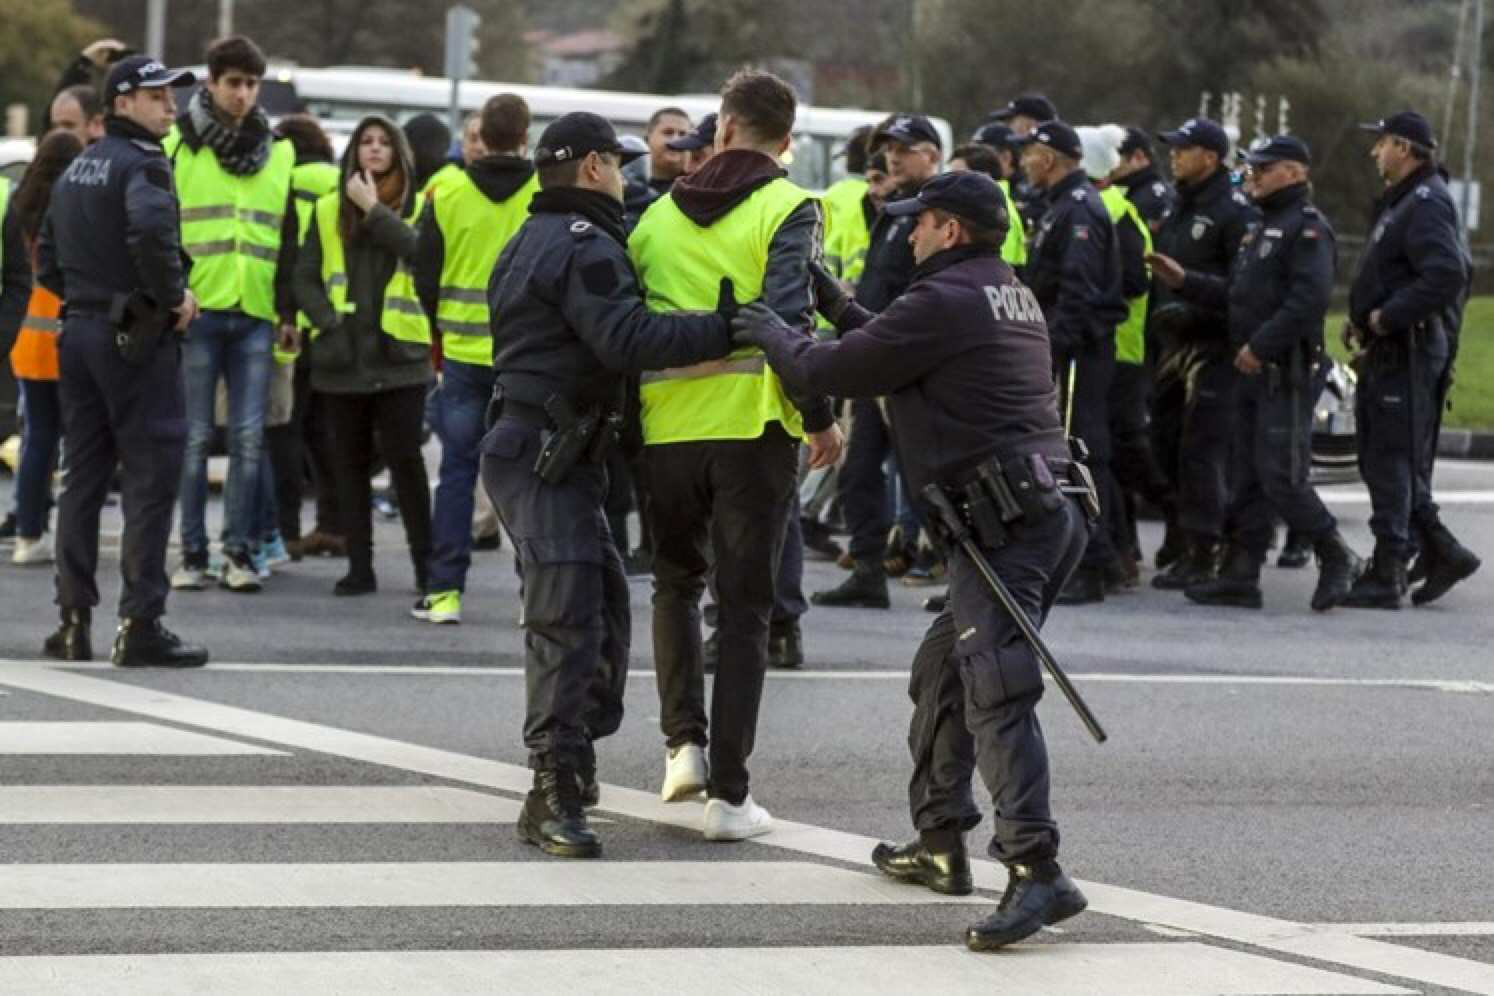 葡萄牙警察图片